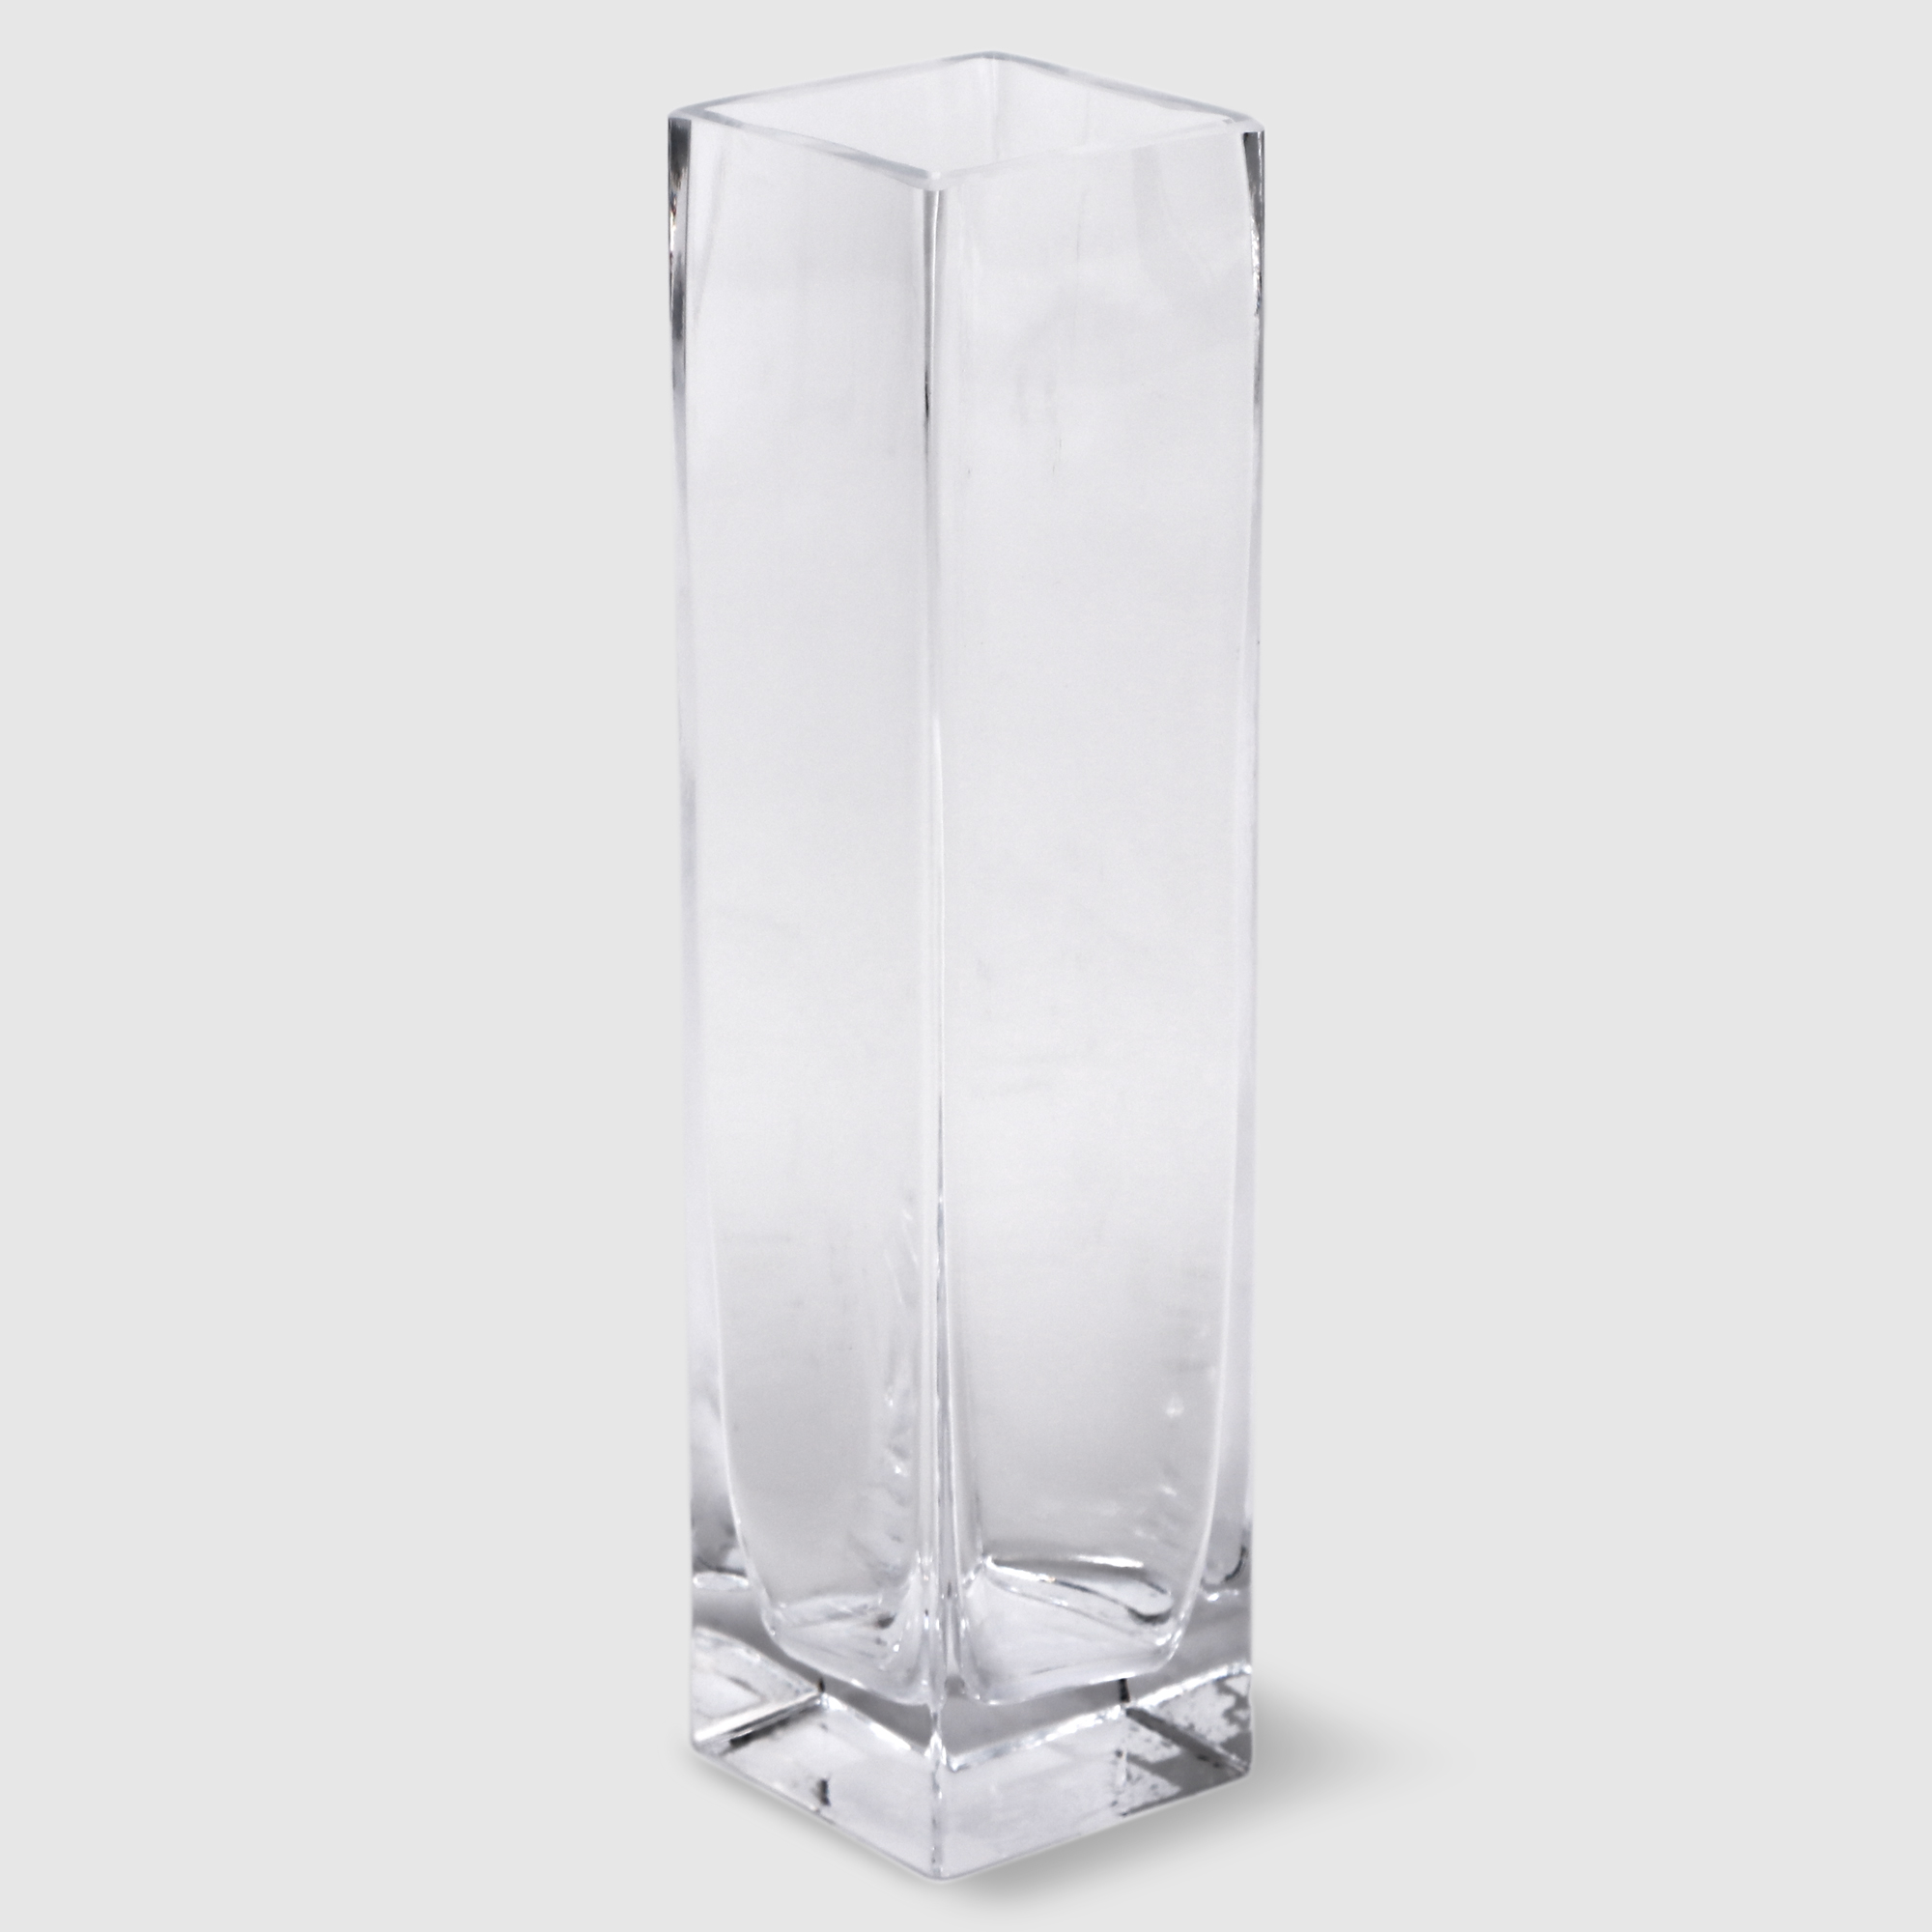 Ваза Hakbijl glass Element д6 см 25 см